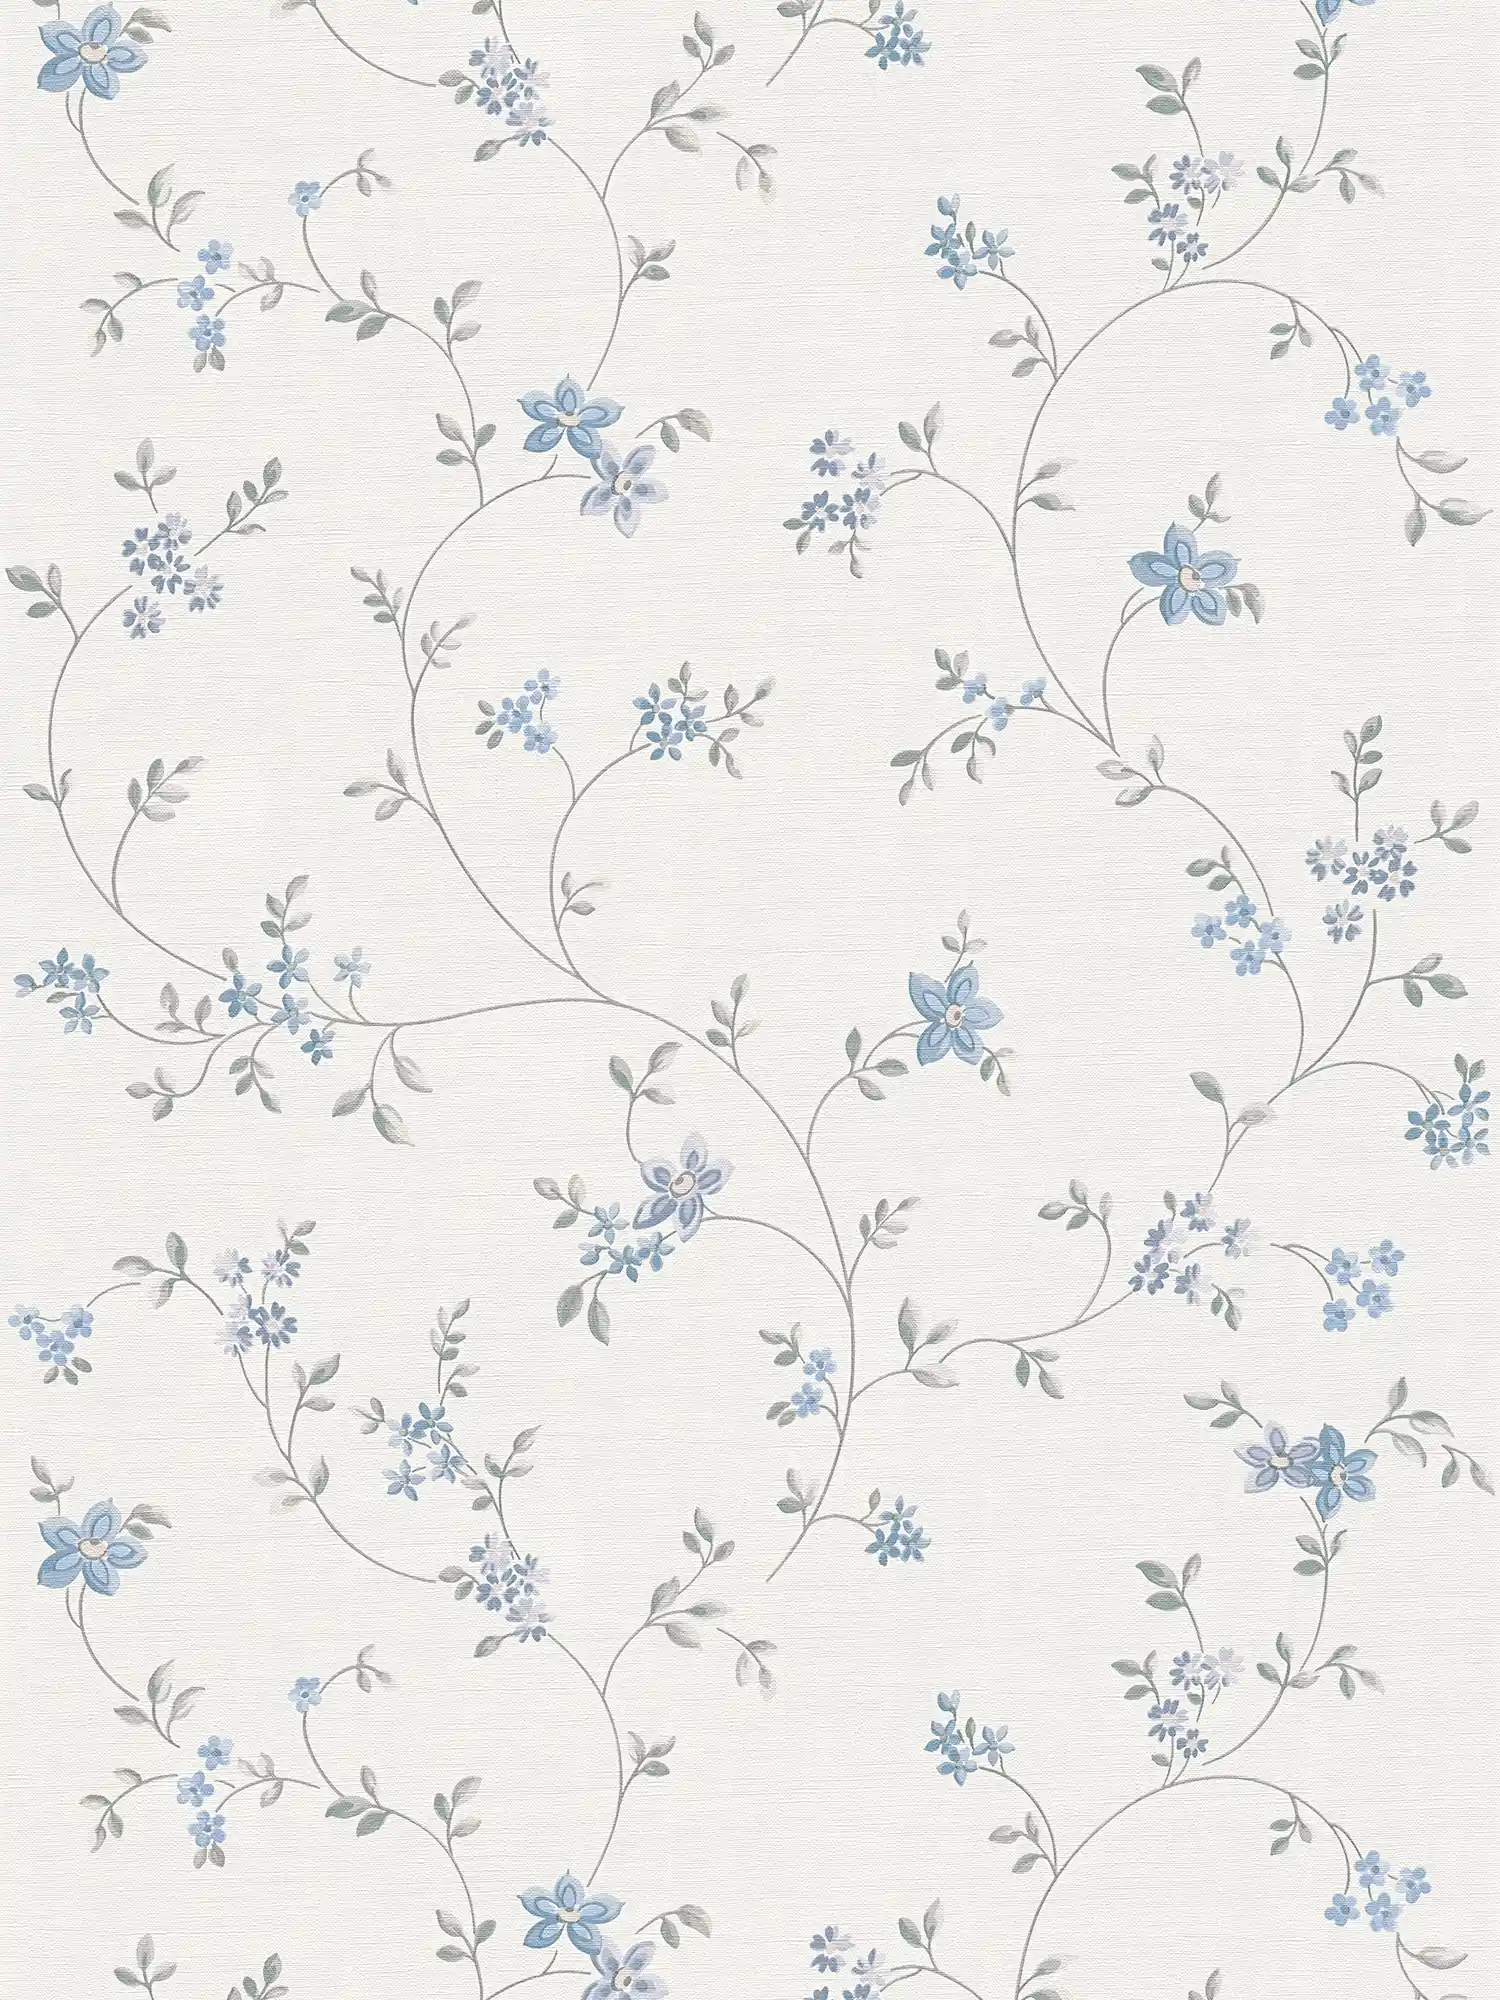 Carta da parati in tessuto non tessuto con tralci floreali in stile country - crema, grigio, blu
